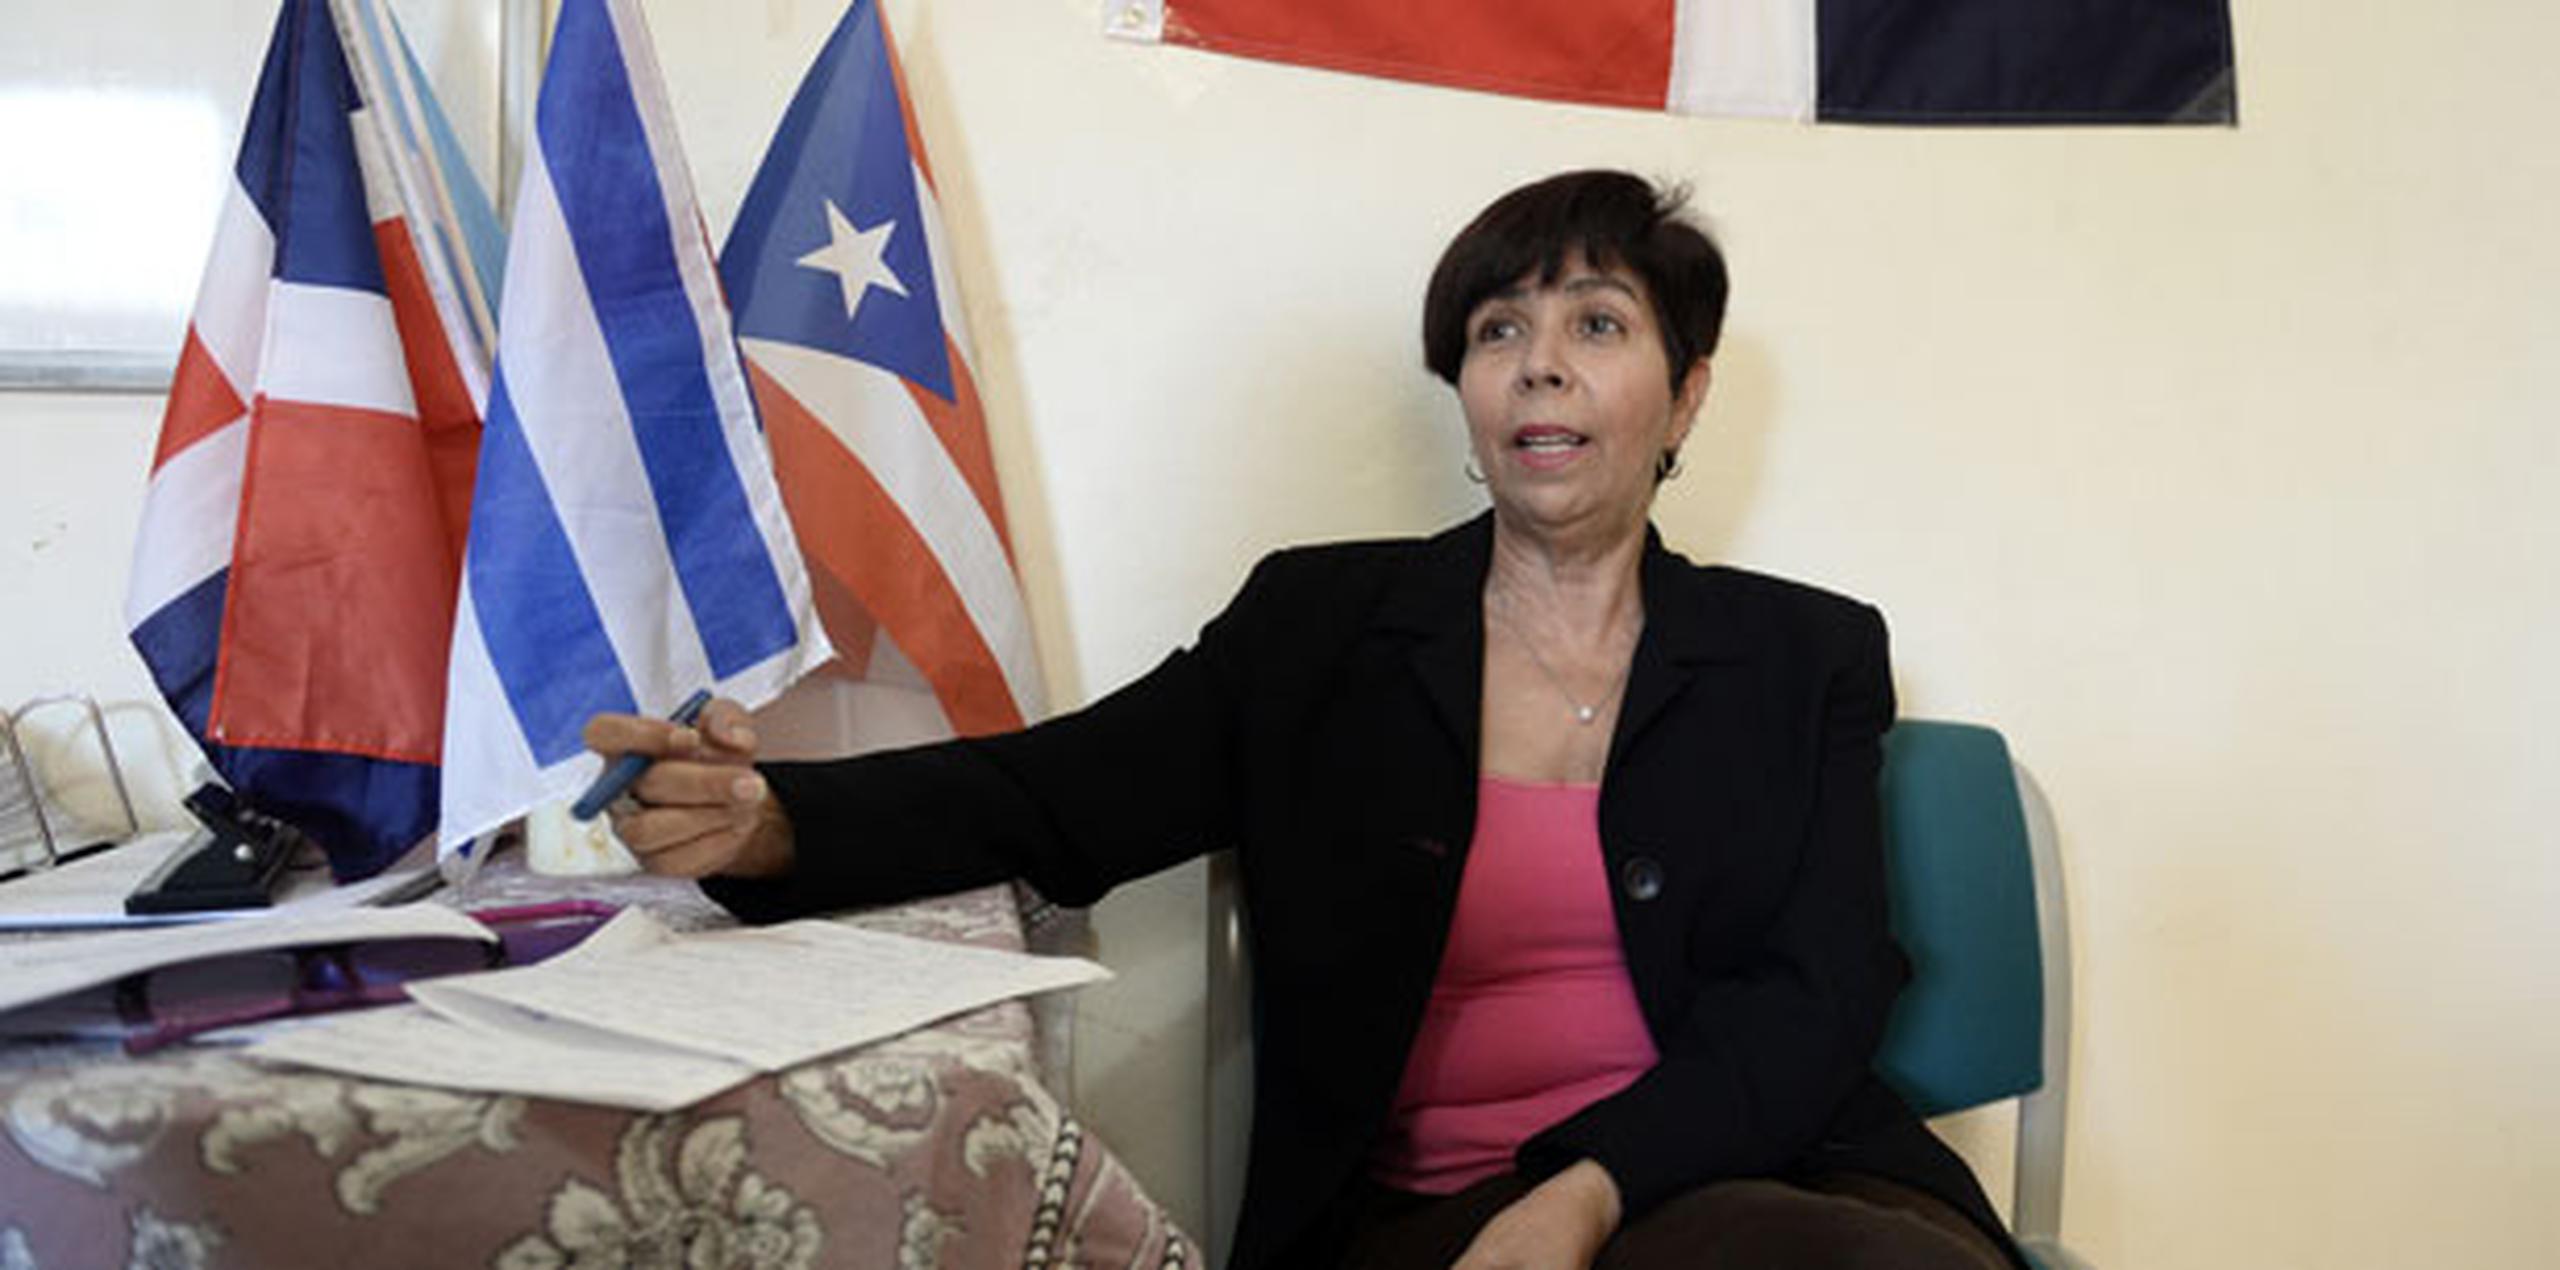 Romelinda  Grullón, directora del Centro para la Mujer Dominicana, cuestionó de qué forma el Departamento del Trabajo les va a poder garantizar esos derechos a los empleados domésticos. (gerald.lopez@gfrmedia.com)